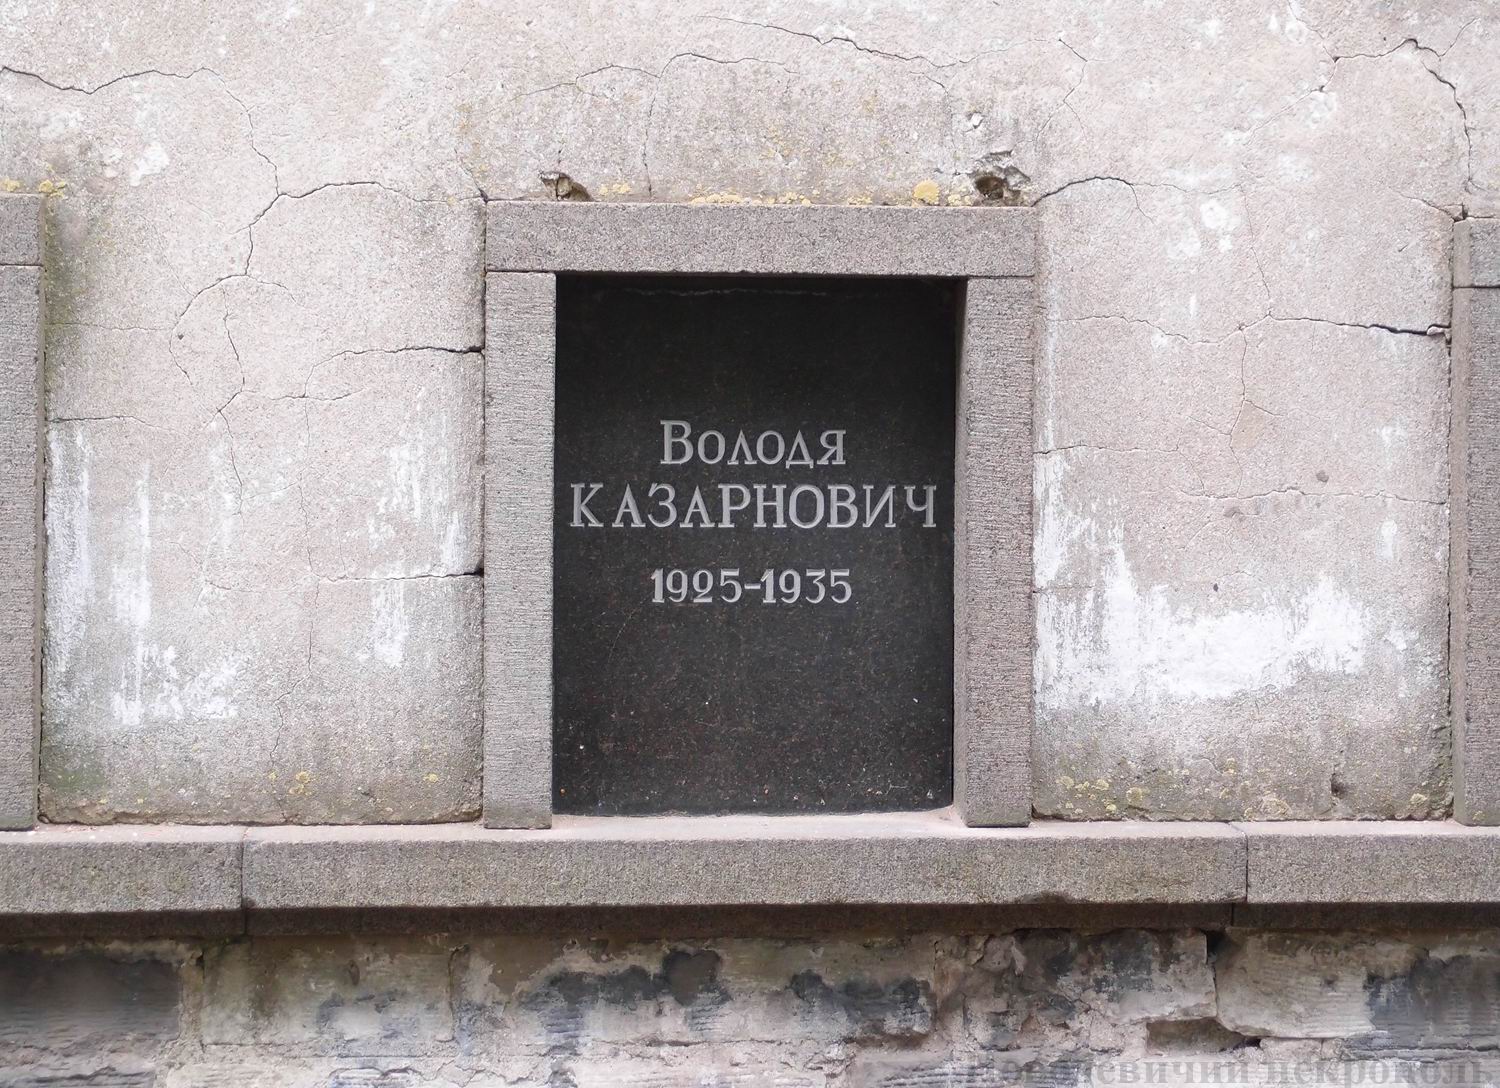 Плита на нише Казарновича Володи (1925–1935), на Новодевичьем кладбище (колумбарий [3]–42). Нажмите левую кнопку мыши, чтобы увидеть общий вид секции.